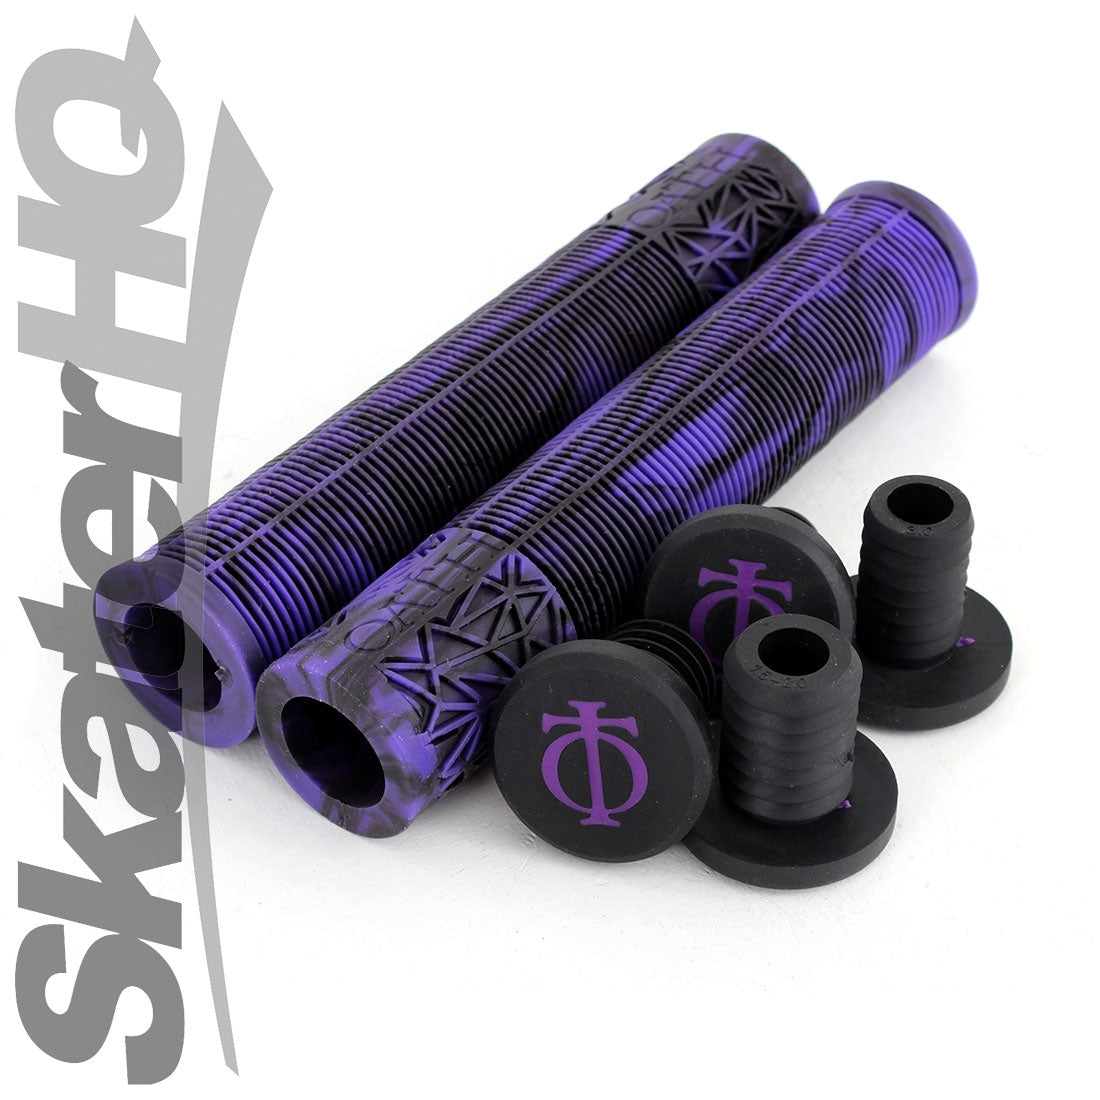 Oath Bermuda Grips - Purple/Black Swirl Scooter Grips